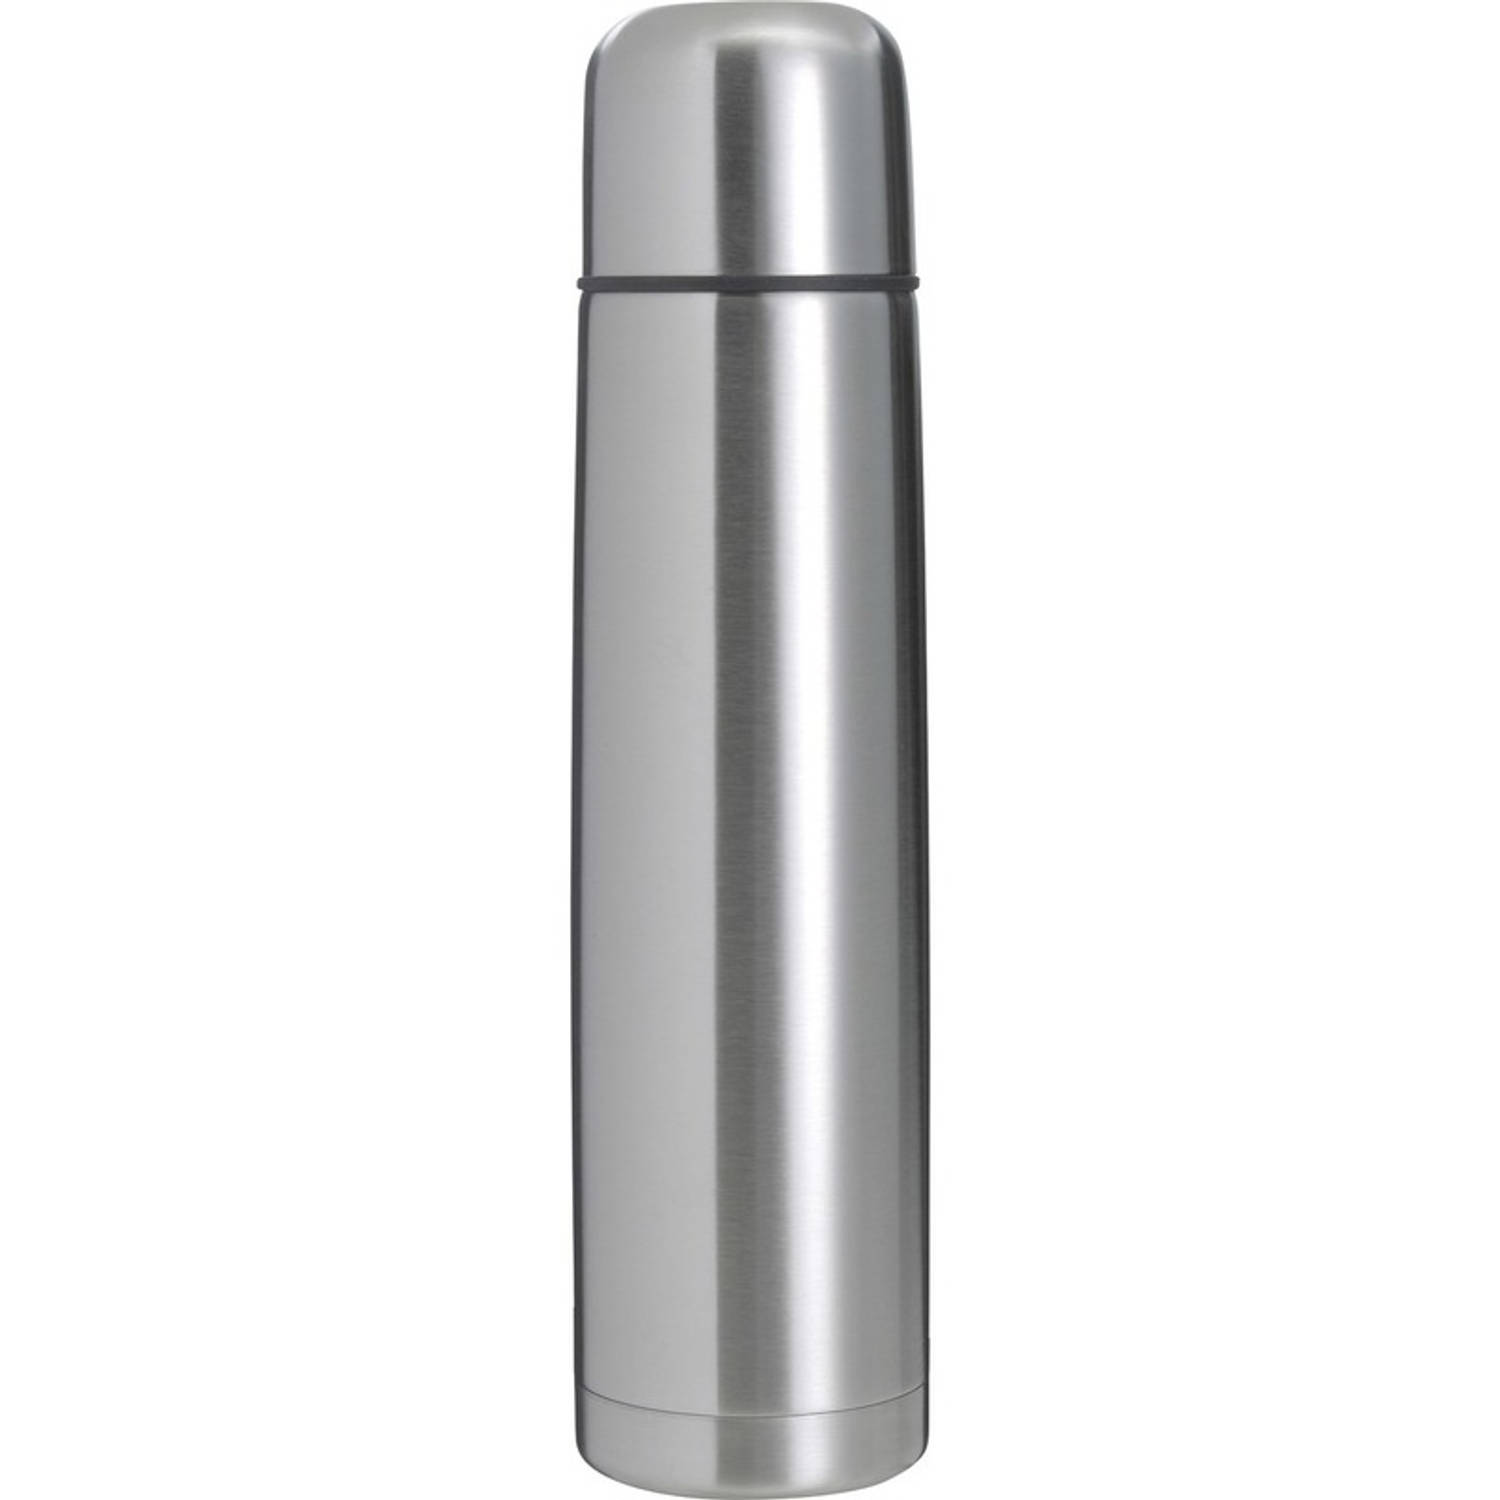 venster Bezwaar welvaart RVS thermosfles/isoleerkan 1 liter zilver - Thermosflessen | Blokker